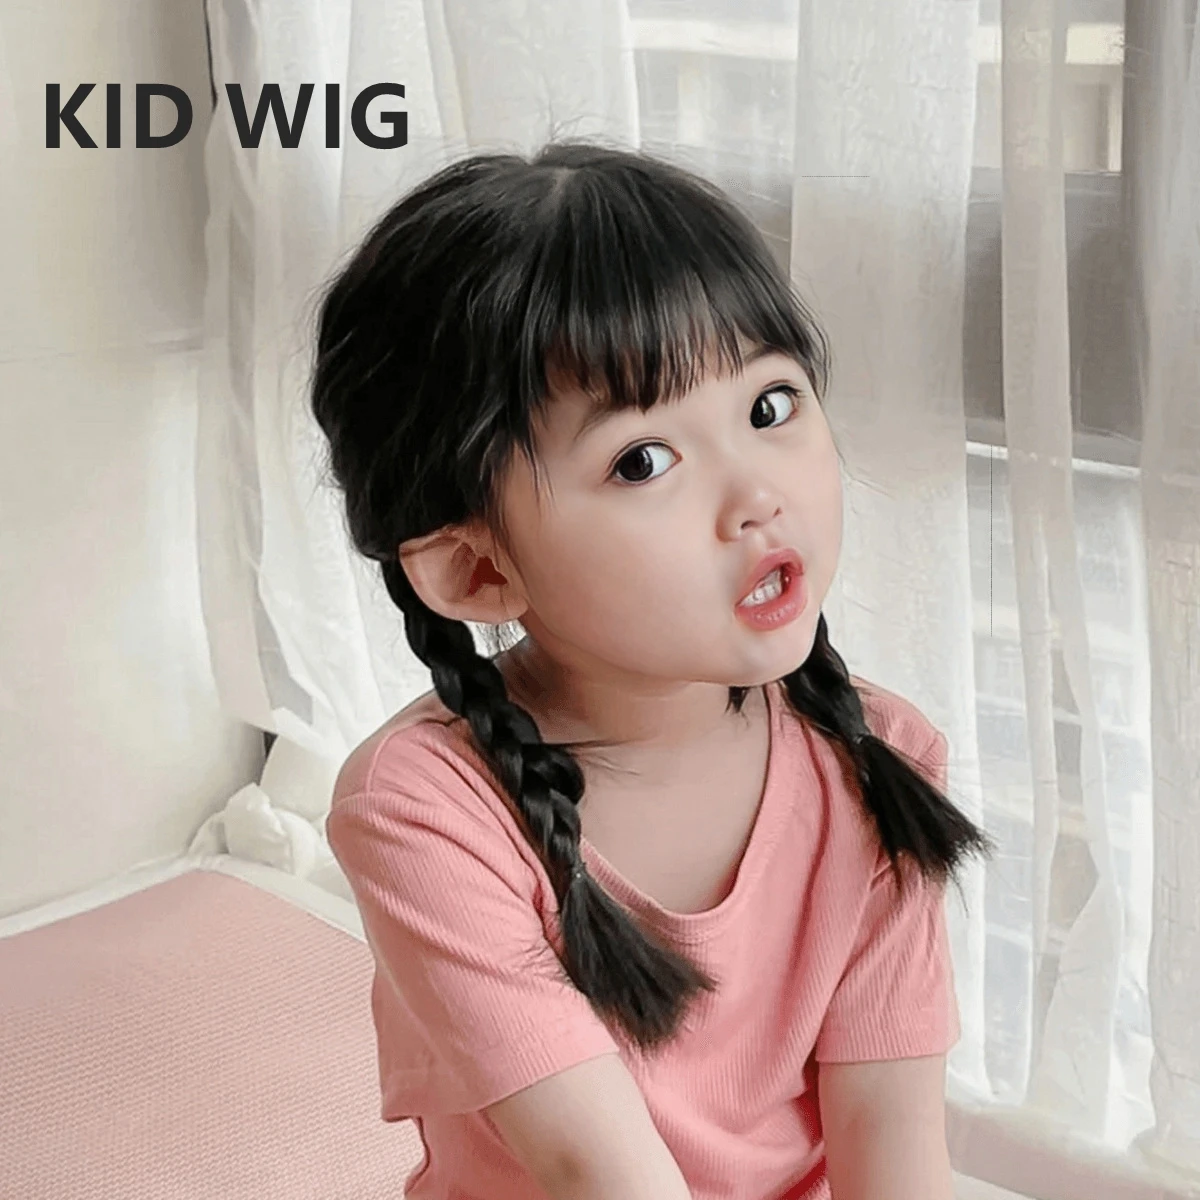 Baby Wigs Kids Hair Accessories Children's Head Coverings Toddler Hood Headgear for Little Girl Preschool Headdress Coronet 2-5Y